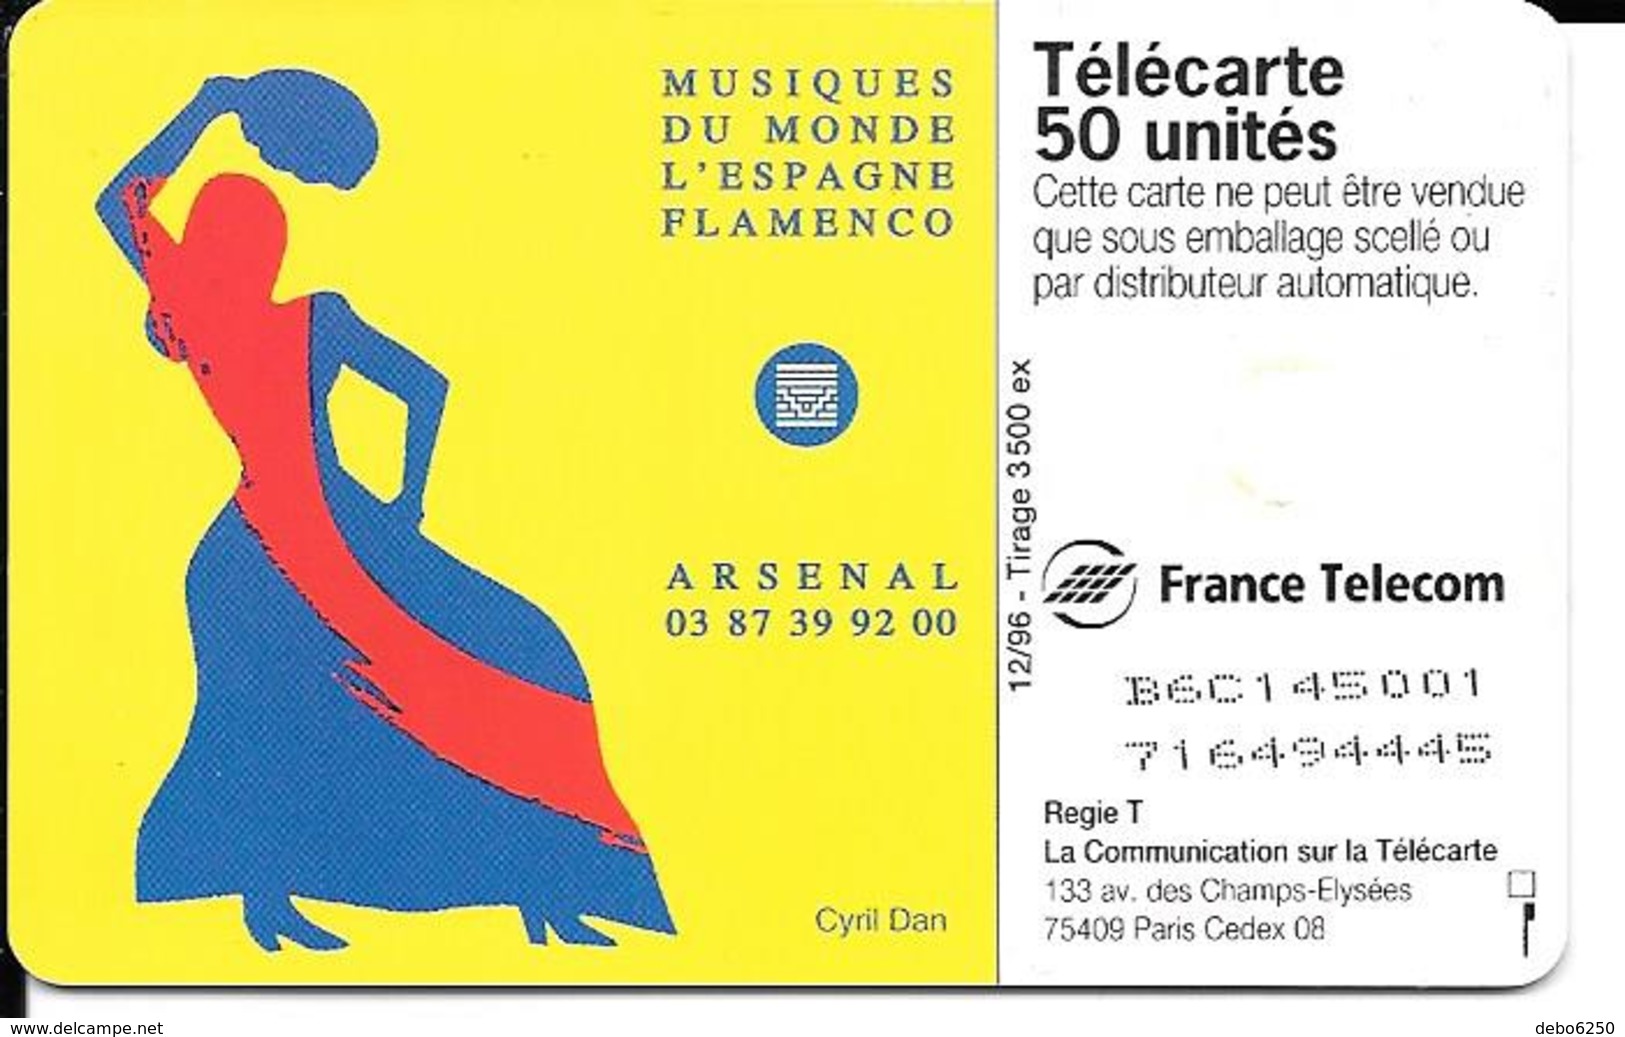 Musiques Du Monde L'Espagne Le Flamenco 3500 Ex Arsenal - Music